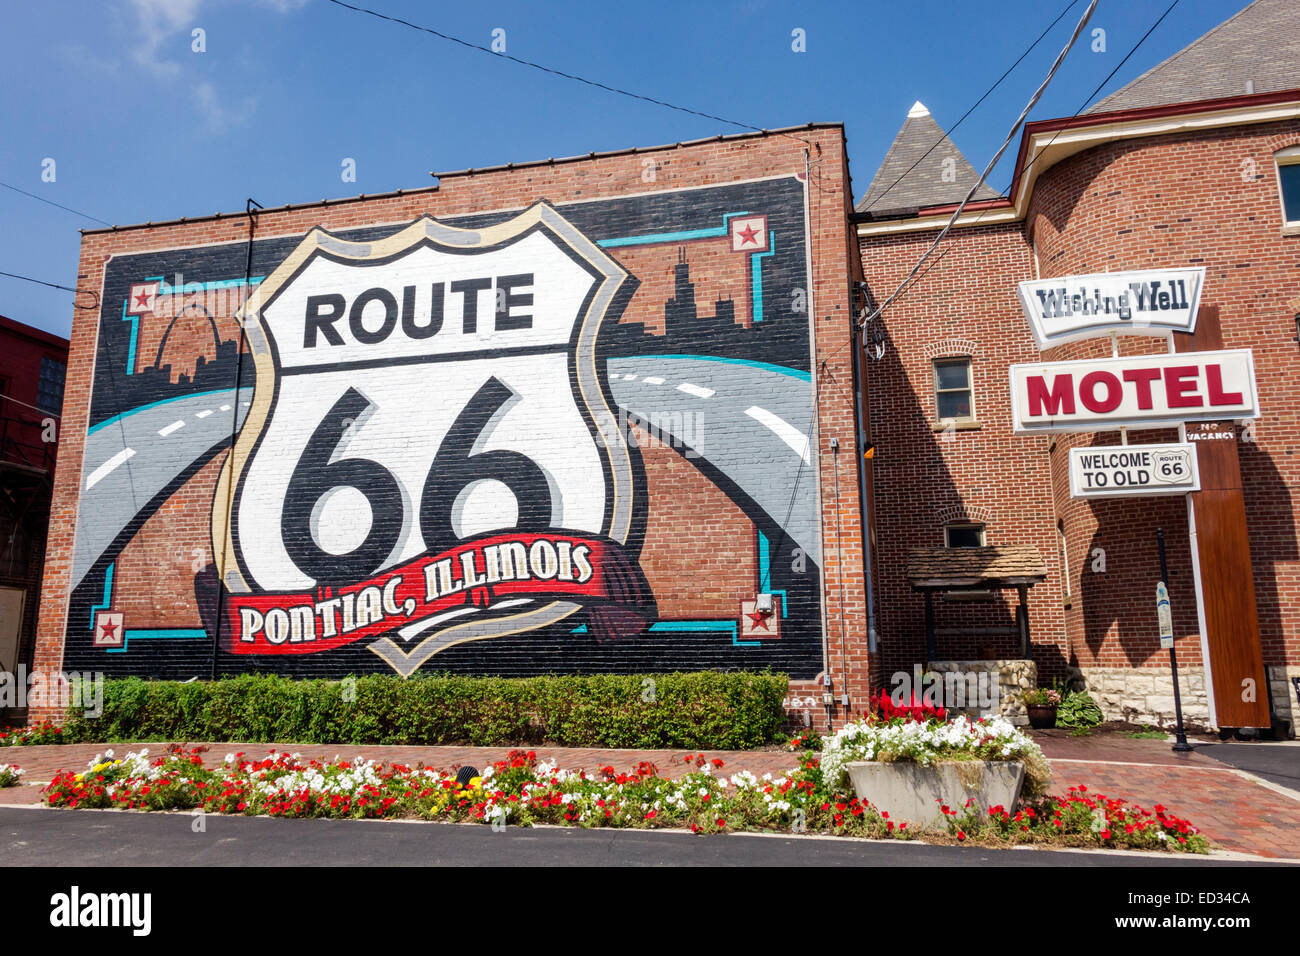 Illinois Pontiac, autoroute historique route 66, fresque, Wishing Well Motel, IL140905046 Banque D'Images